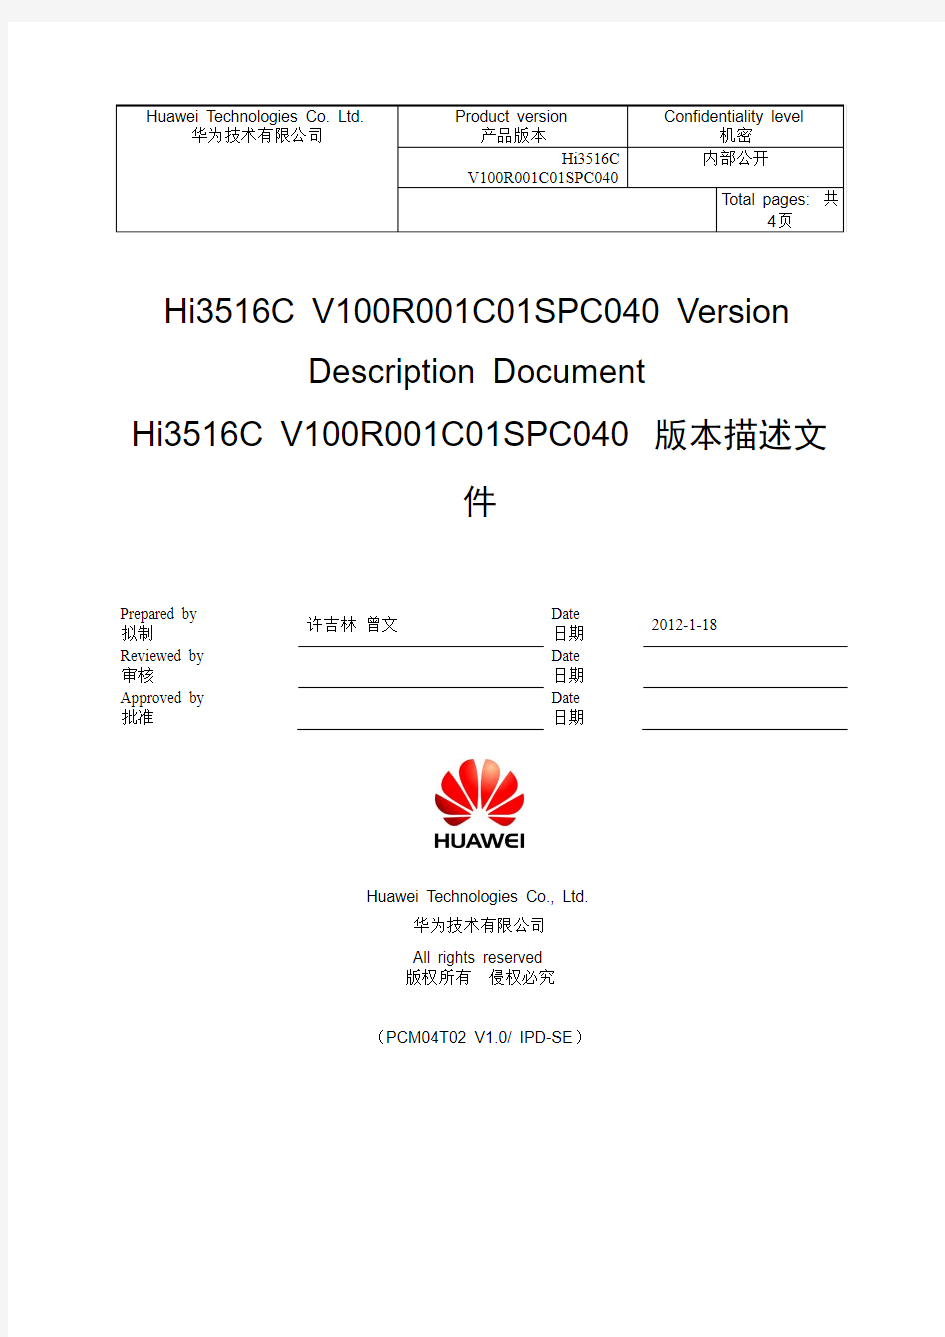 Hi3516C V100R001C01SPC040版本描述文件